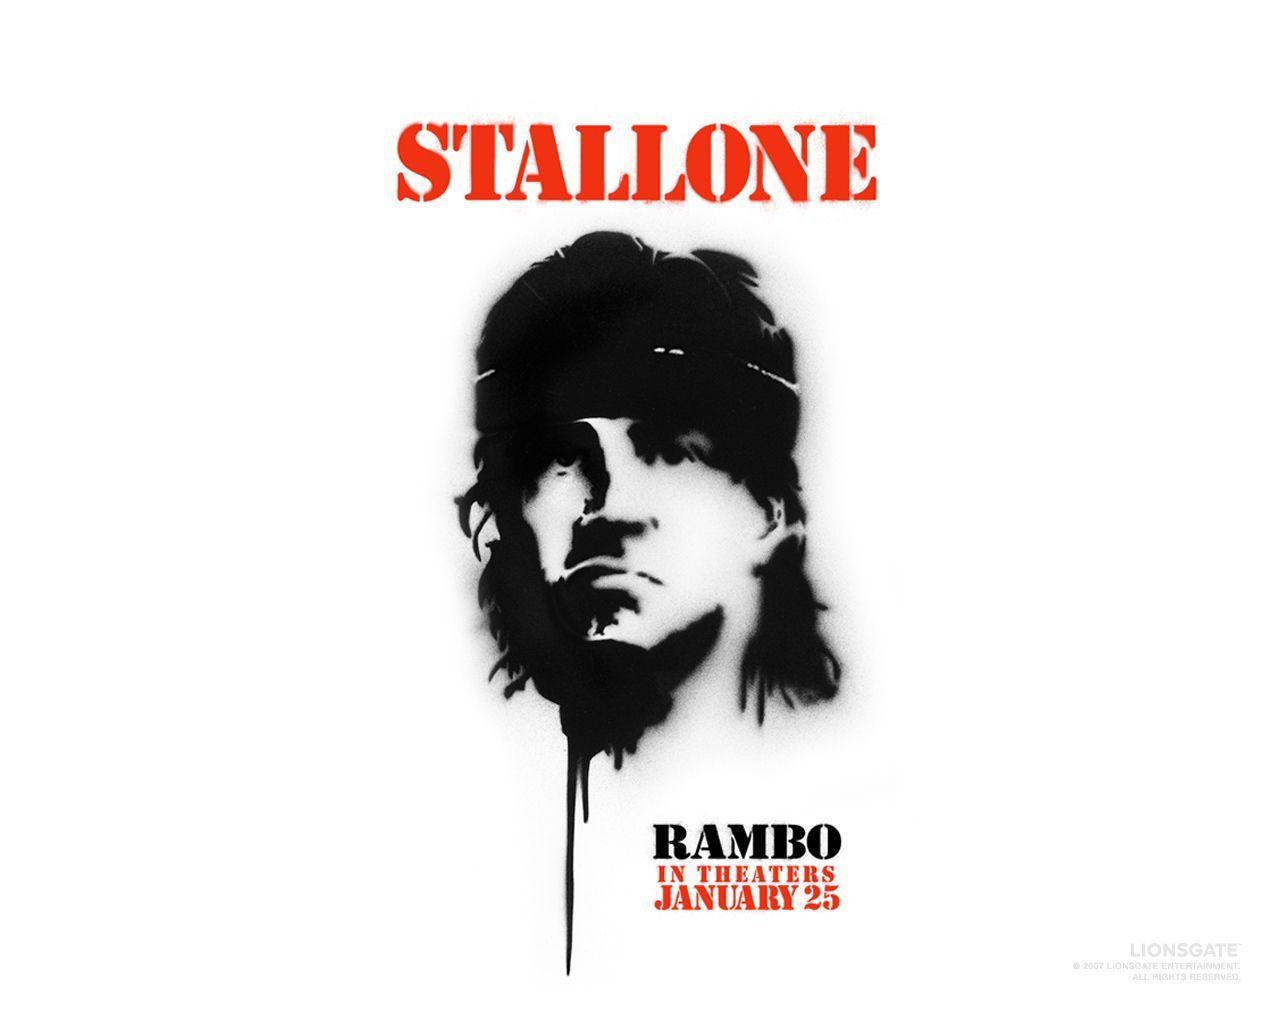 Stallone Rambo wallpaper. Stallone Rambo